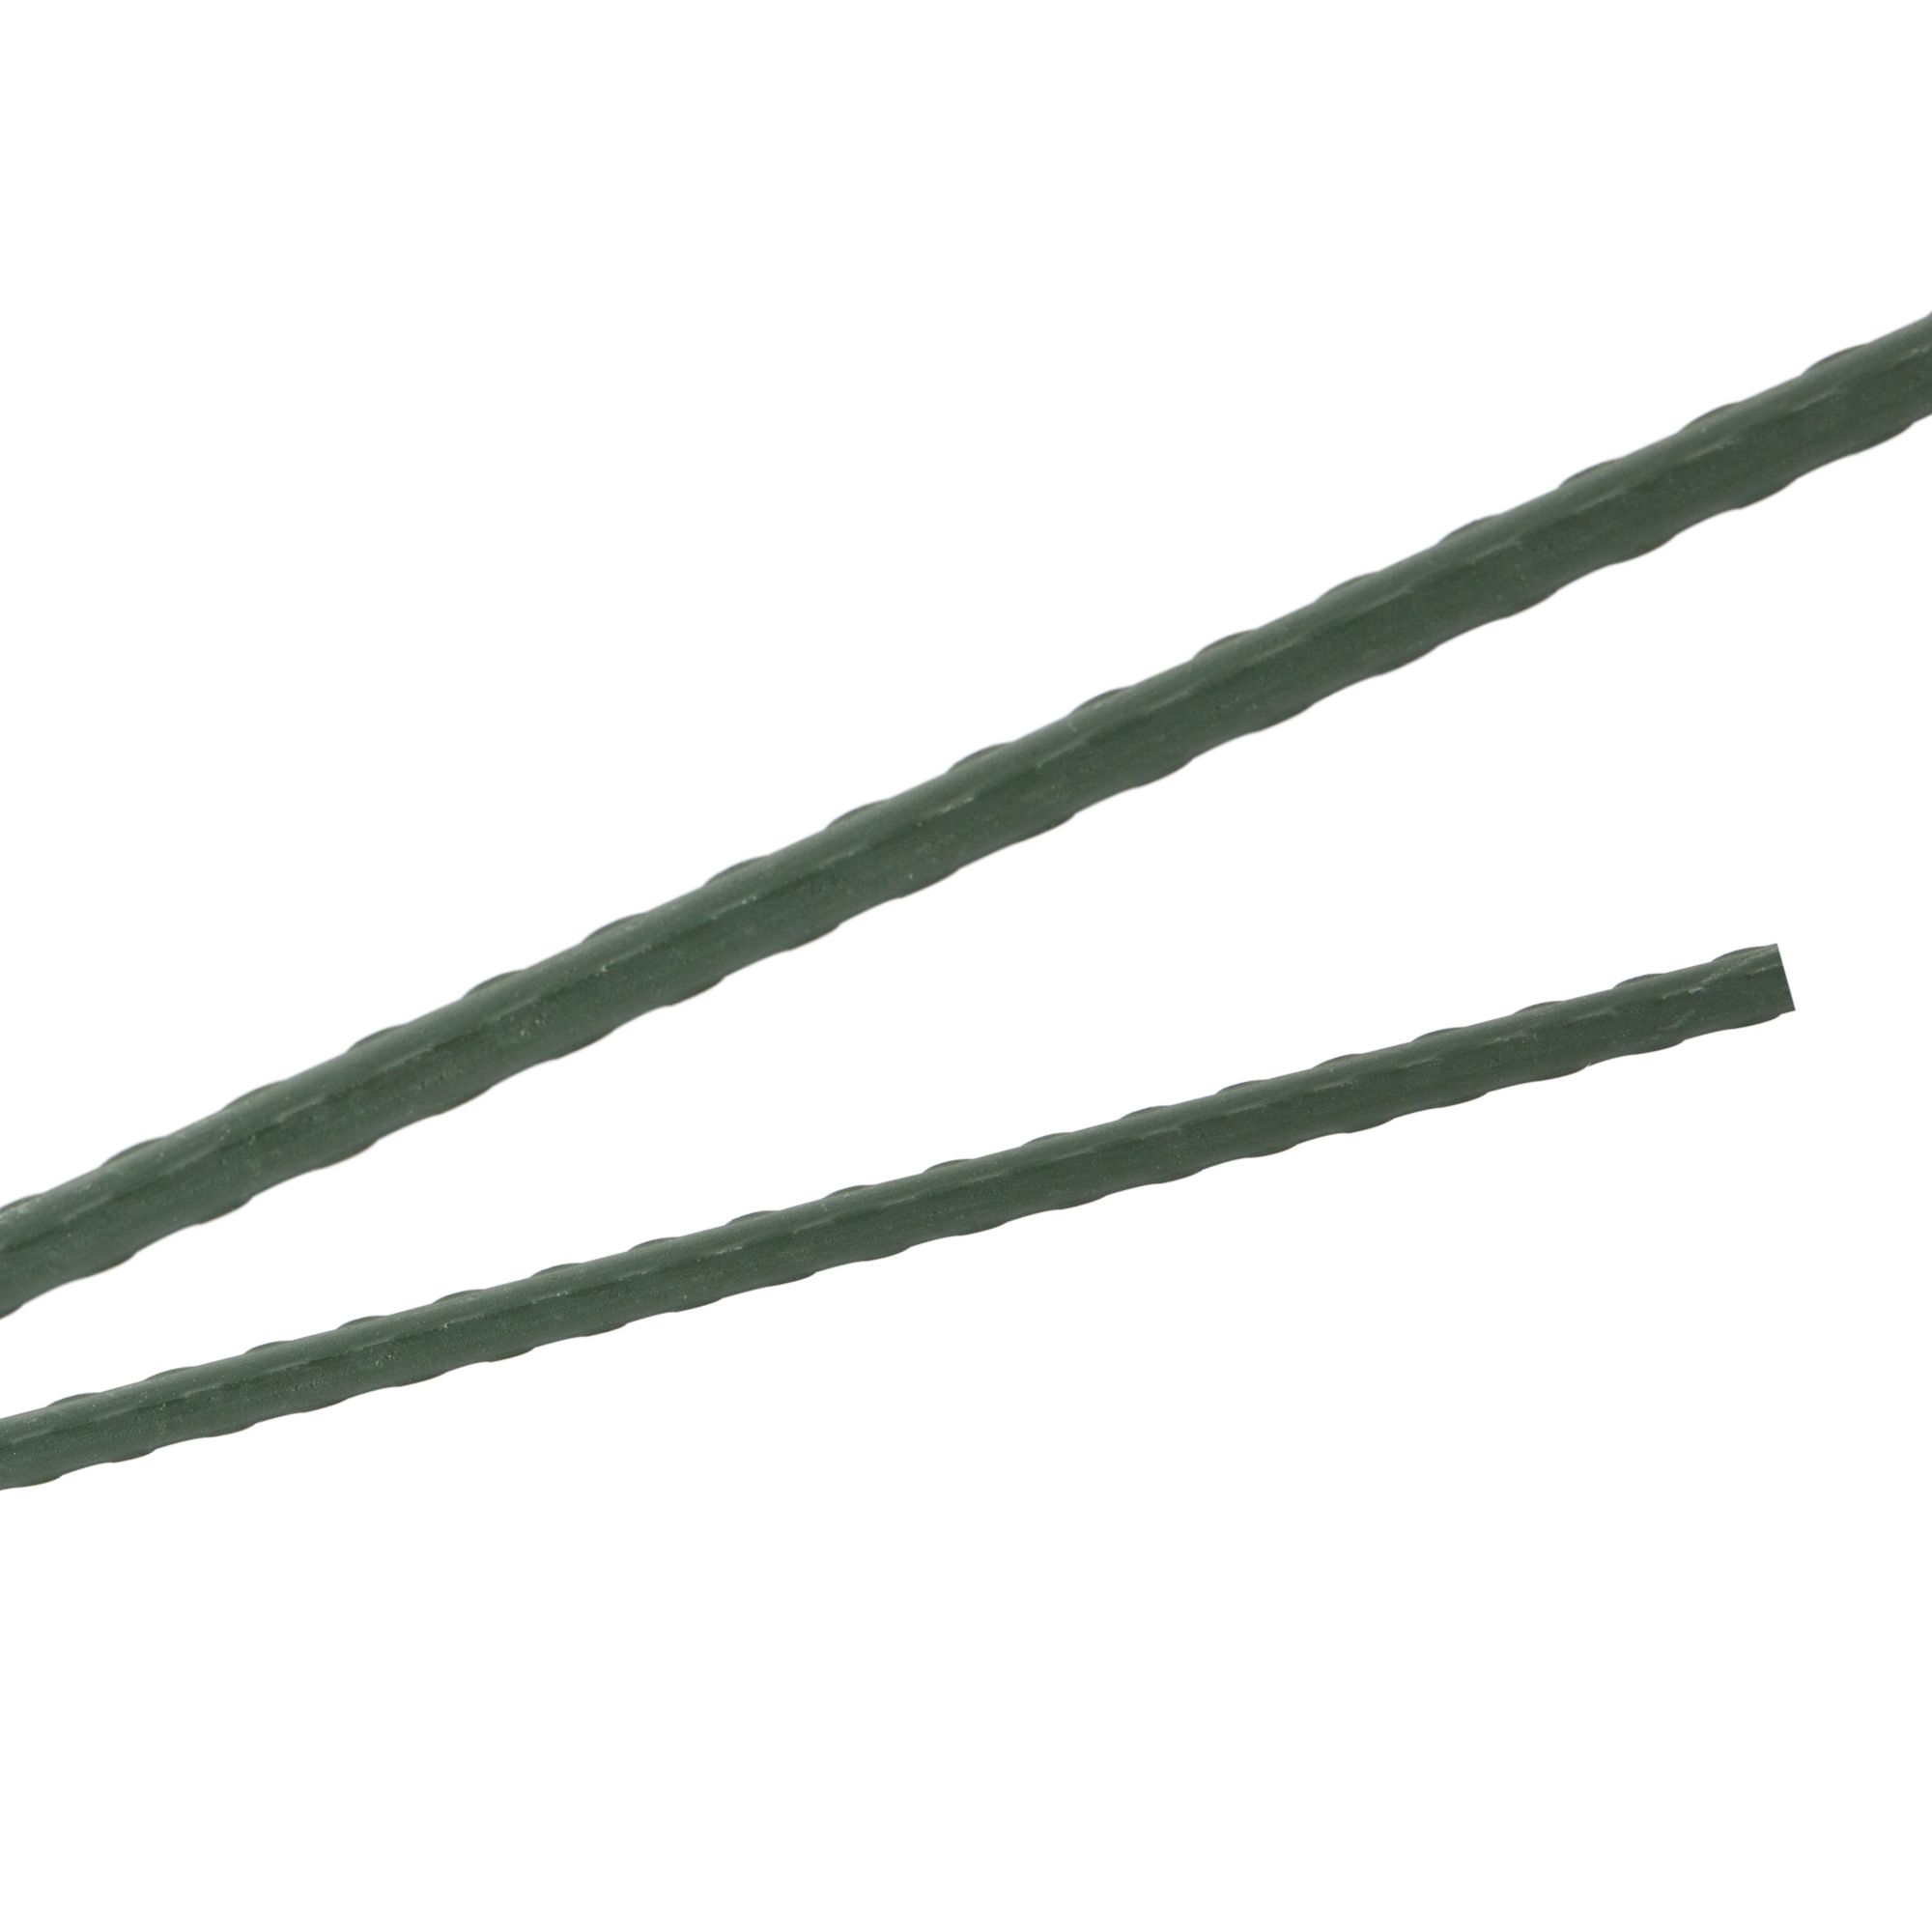 Tyč podpěrná, 11mm, 120cm, kov+PVC, zelená 0.088000 Kg GIGA Sklad20 45654 93